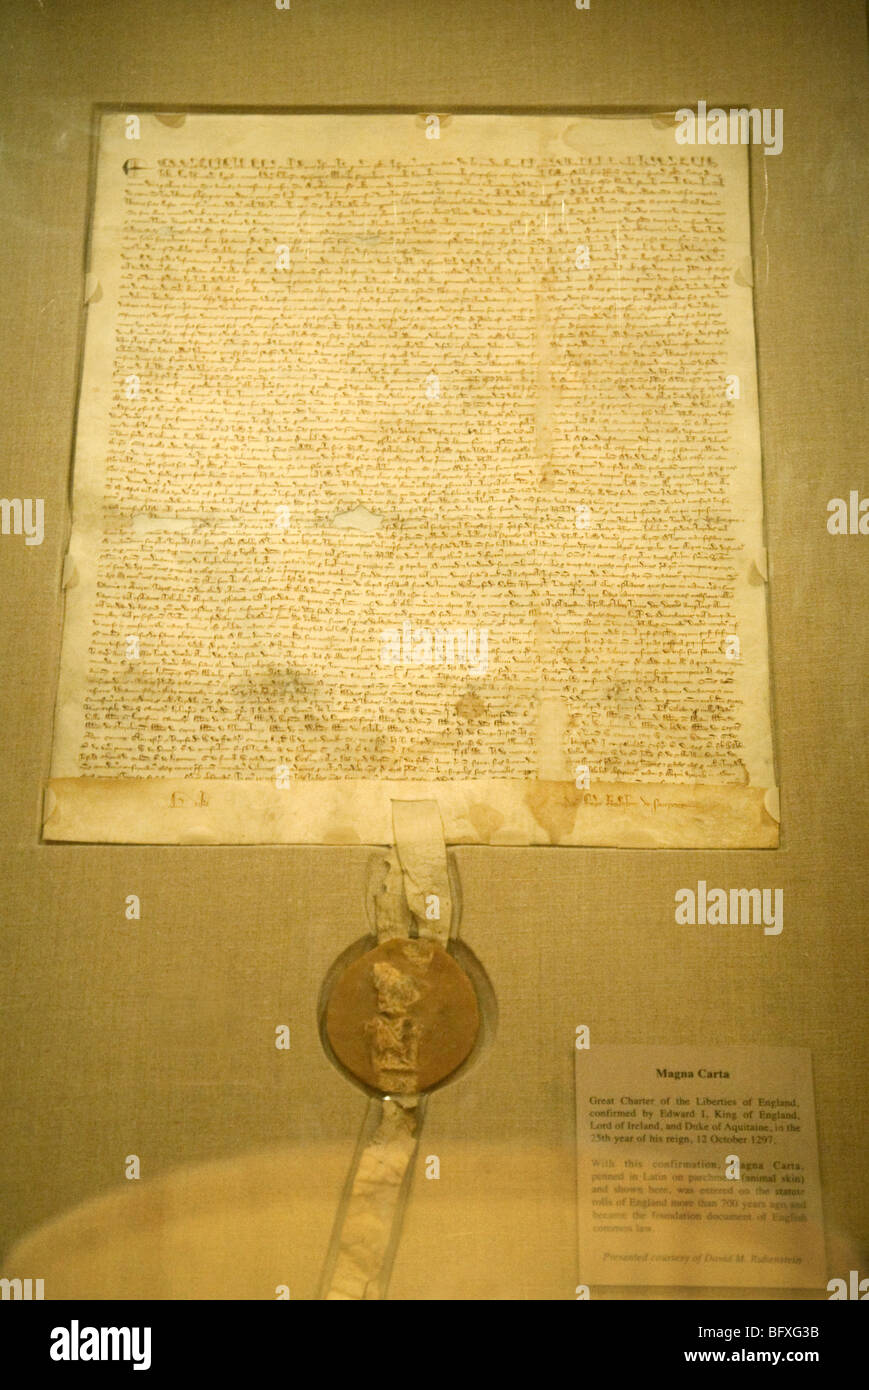 Ursprüngliche Kopie der Magna Carta Dokument Leihgabe der National Archives in Washington DC USA. Siehe CNPX83 für verbesserte version Stockfoto